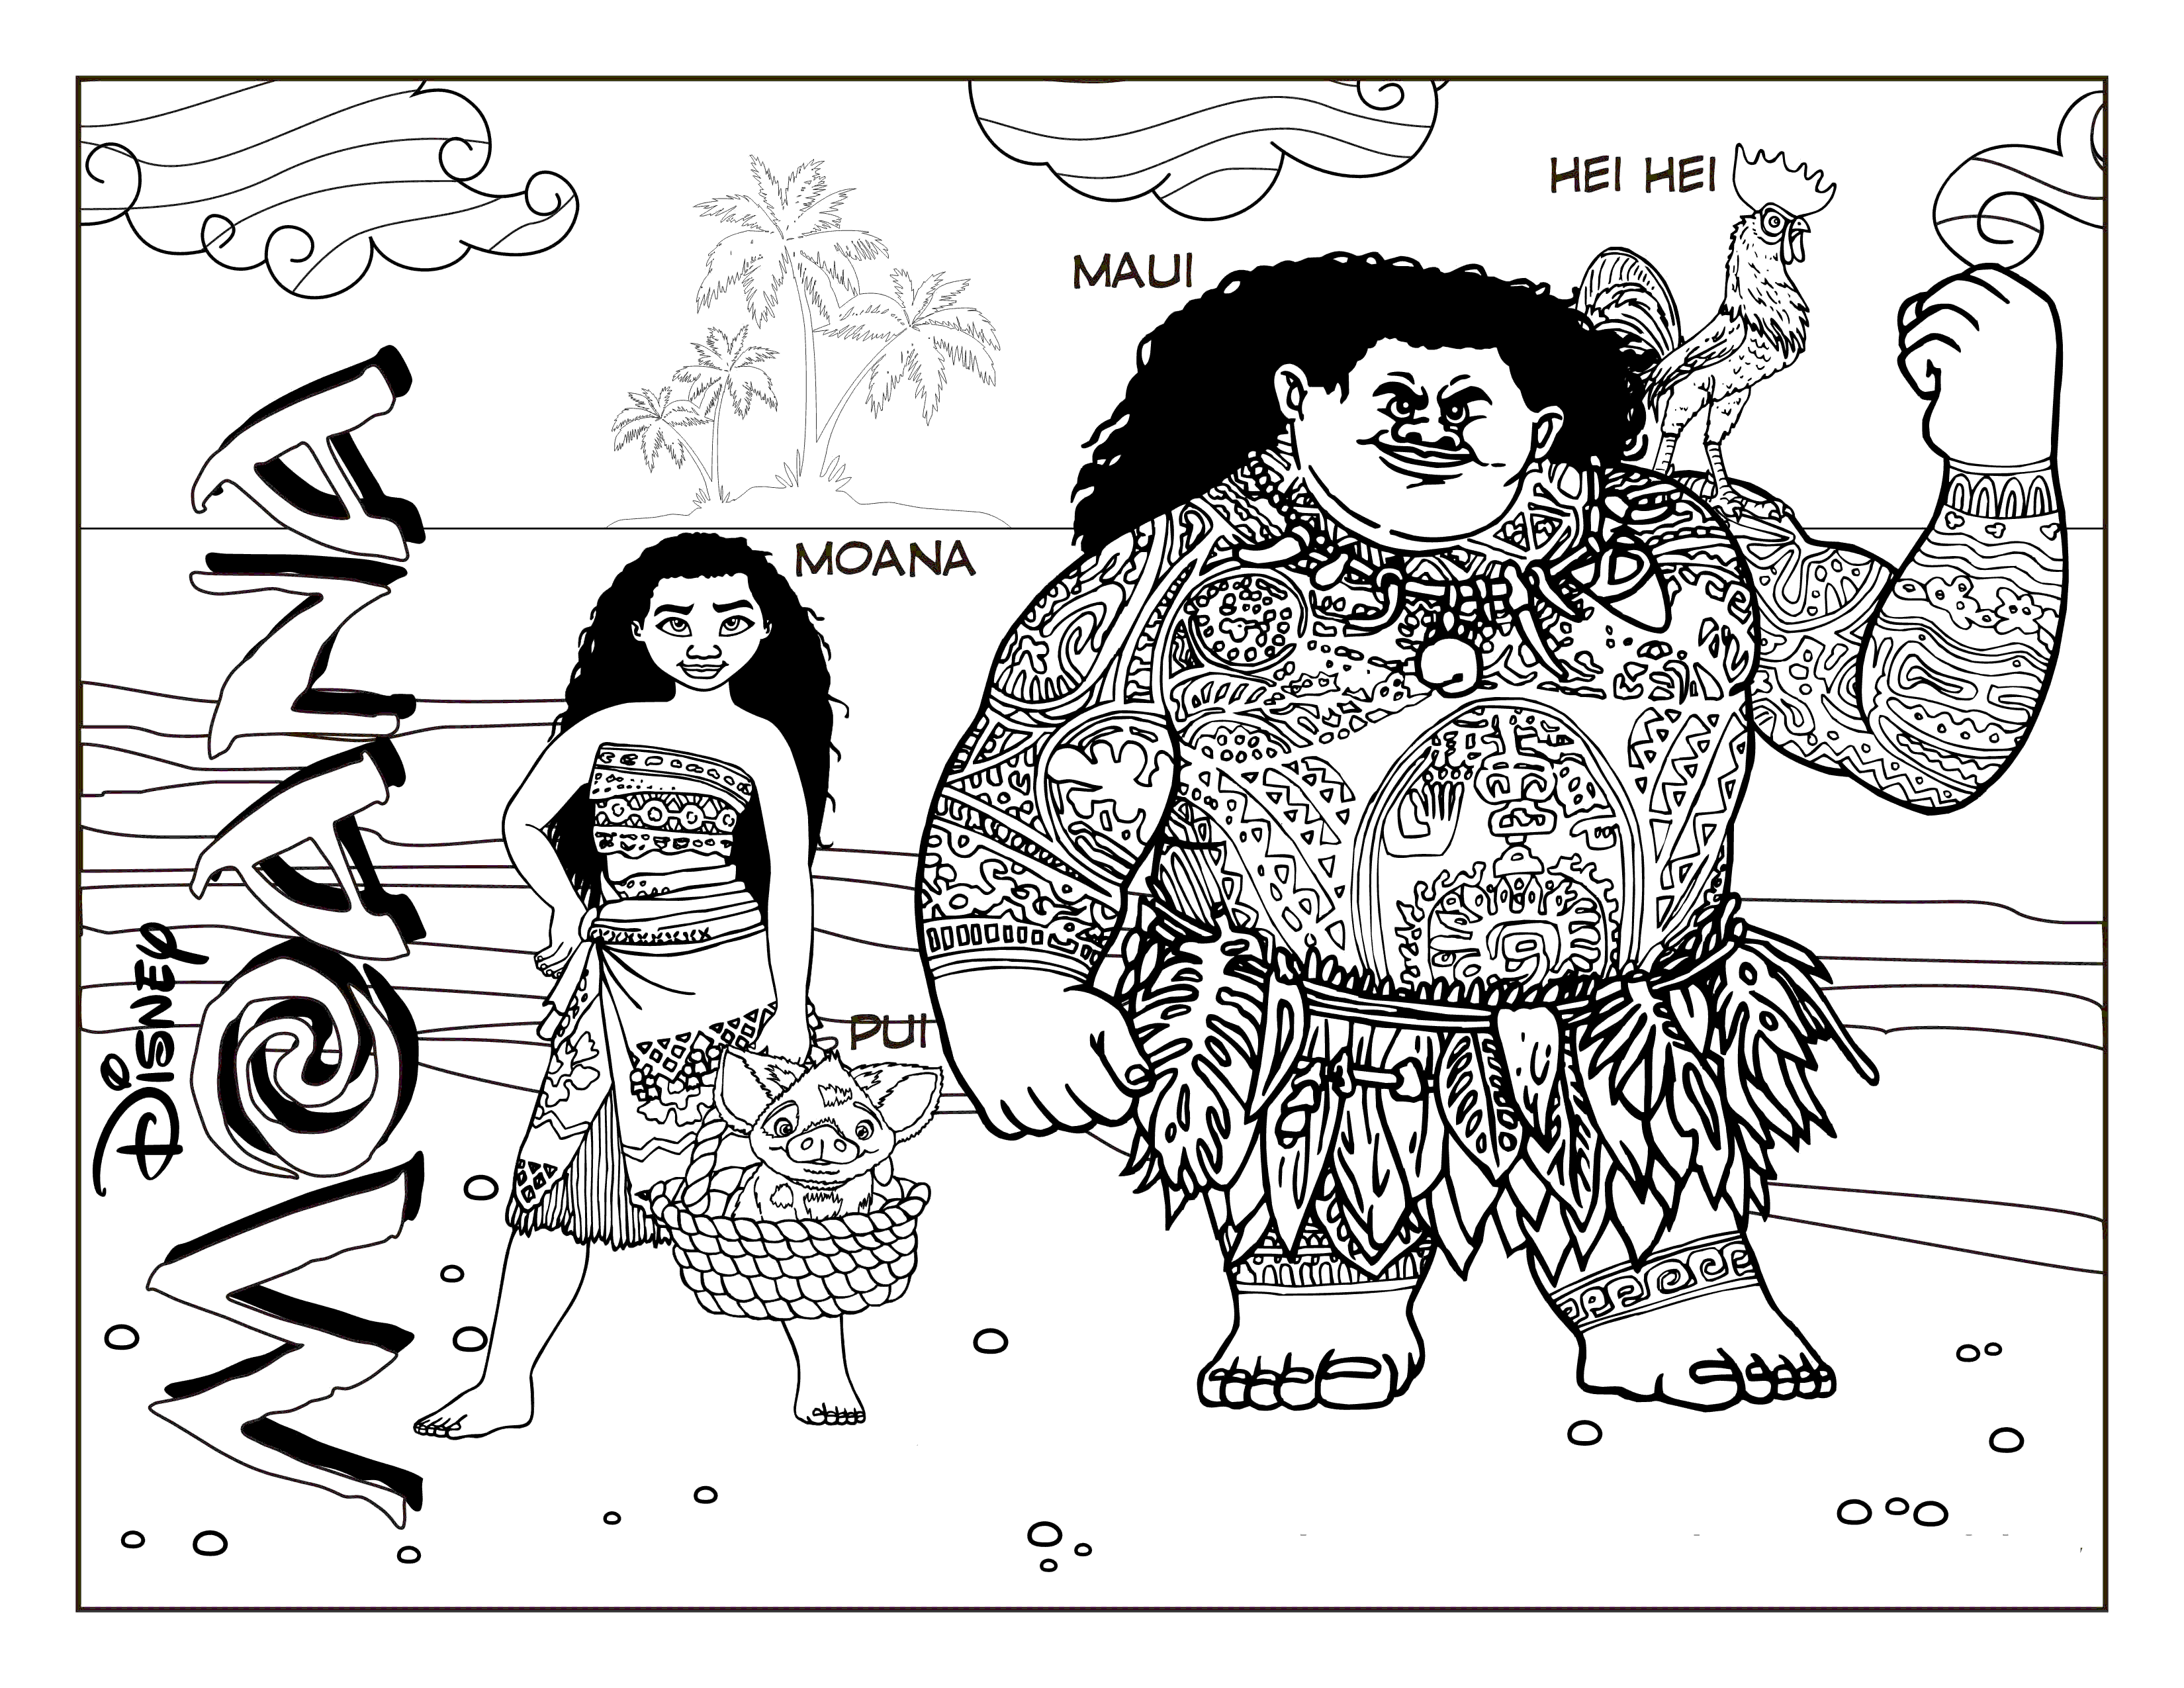 розмальовка Ваяна, Мауї, Пуа і Хей-Хей